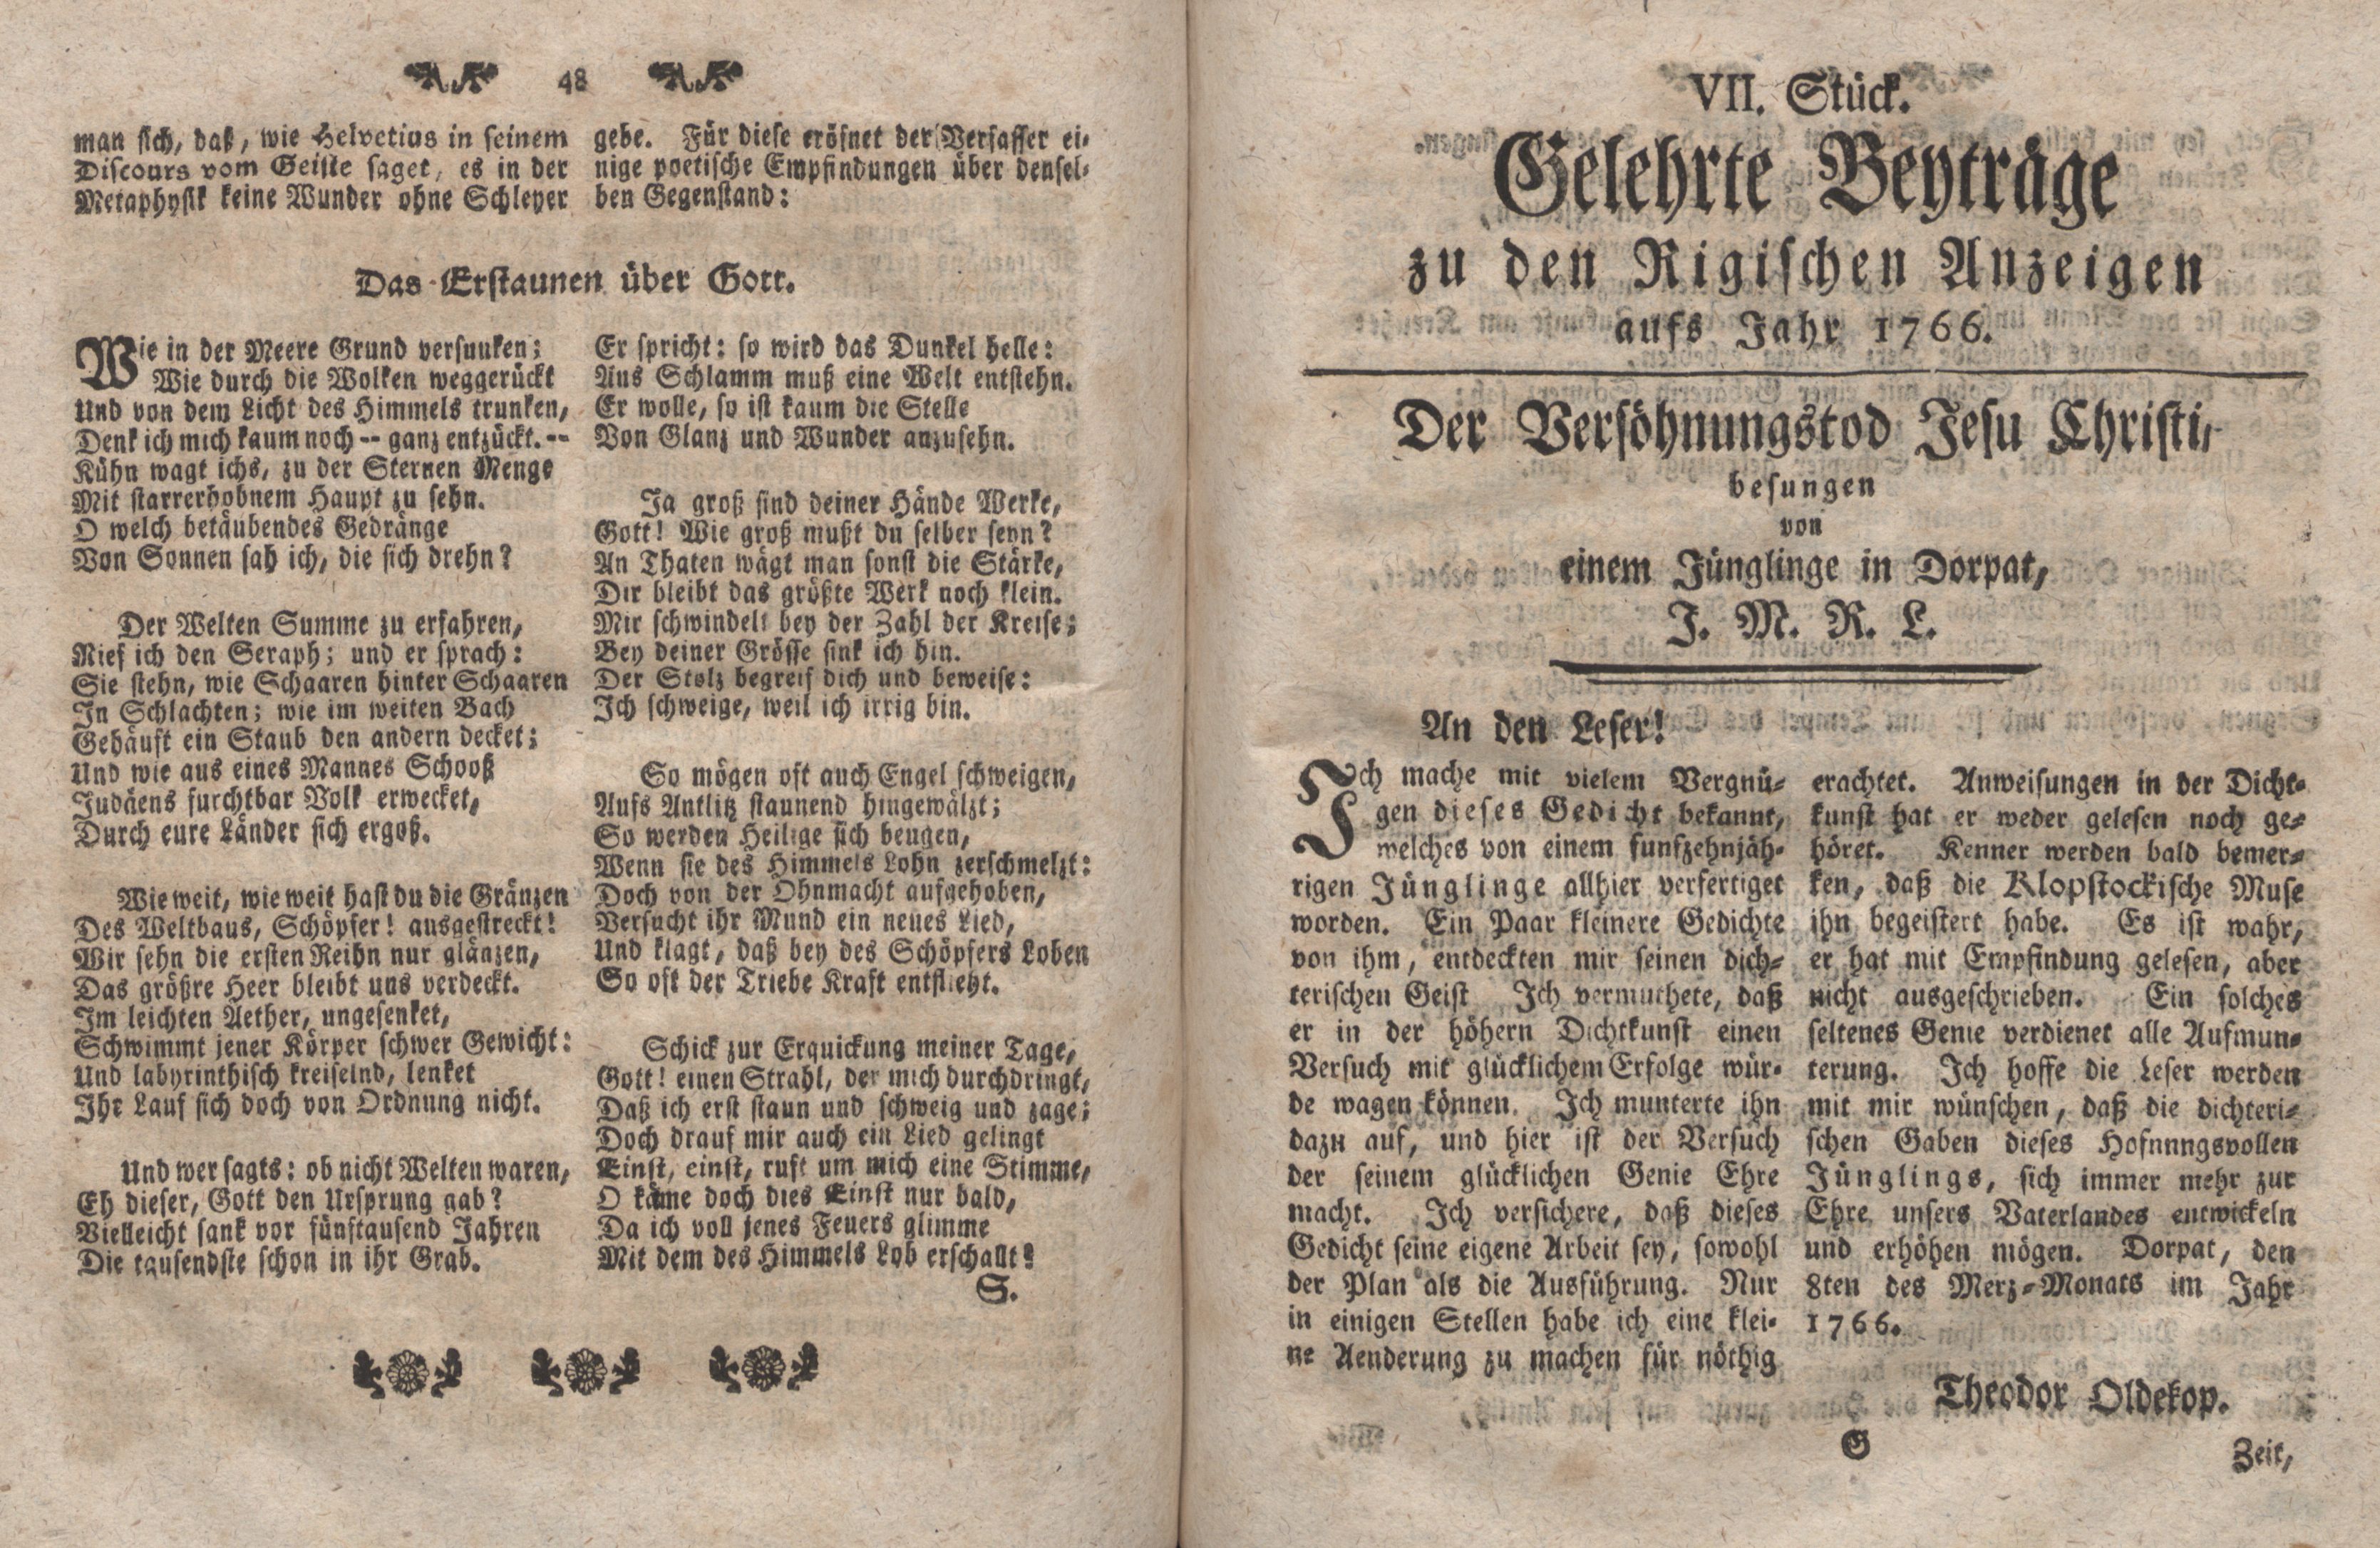 Gelehrte Beyträge zu den Rigischen Anzeigen 1766 (1766) | 25. (48-49) Haupttext